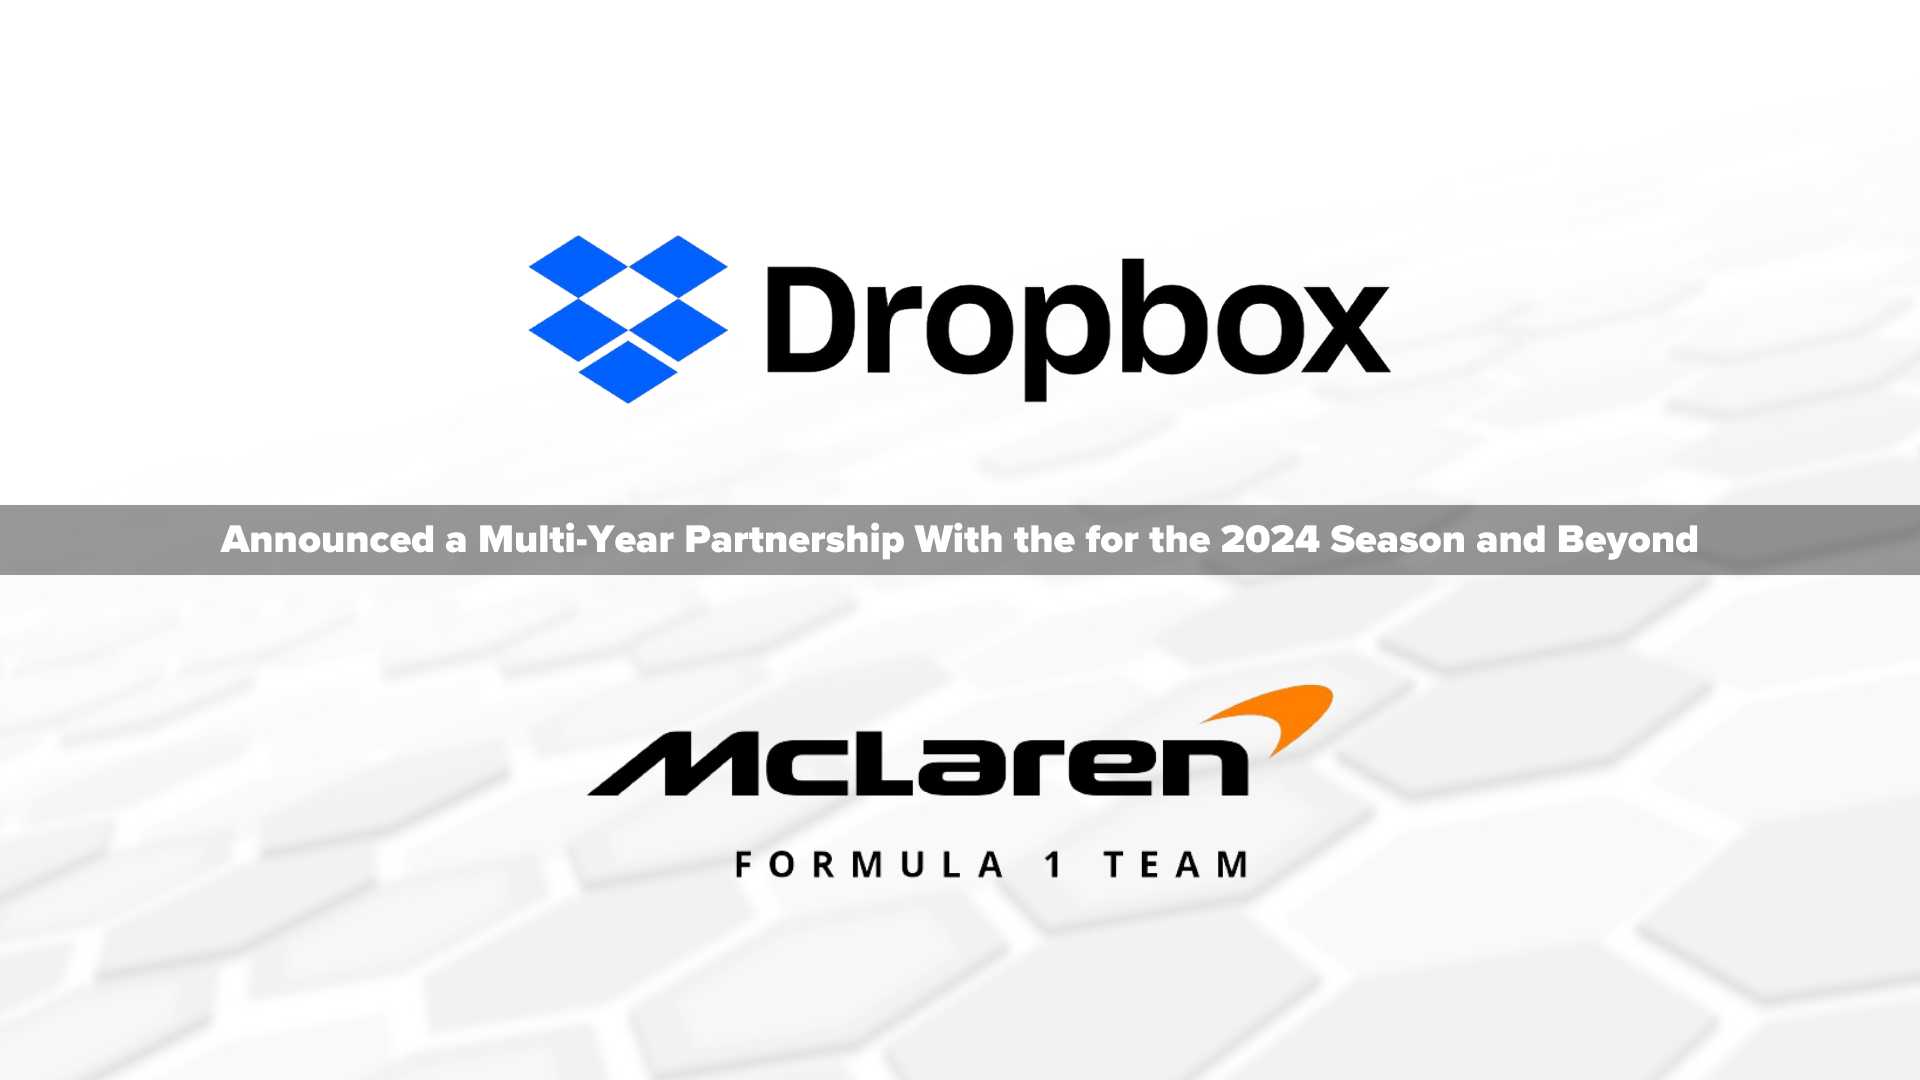 Dropbox Teams Up With McLaren Racing as an Official Technology Partner of McLaren Formula 1 Team